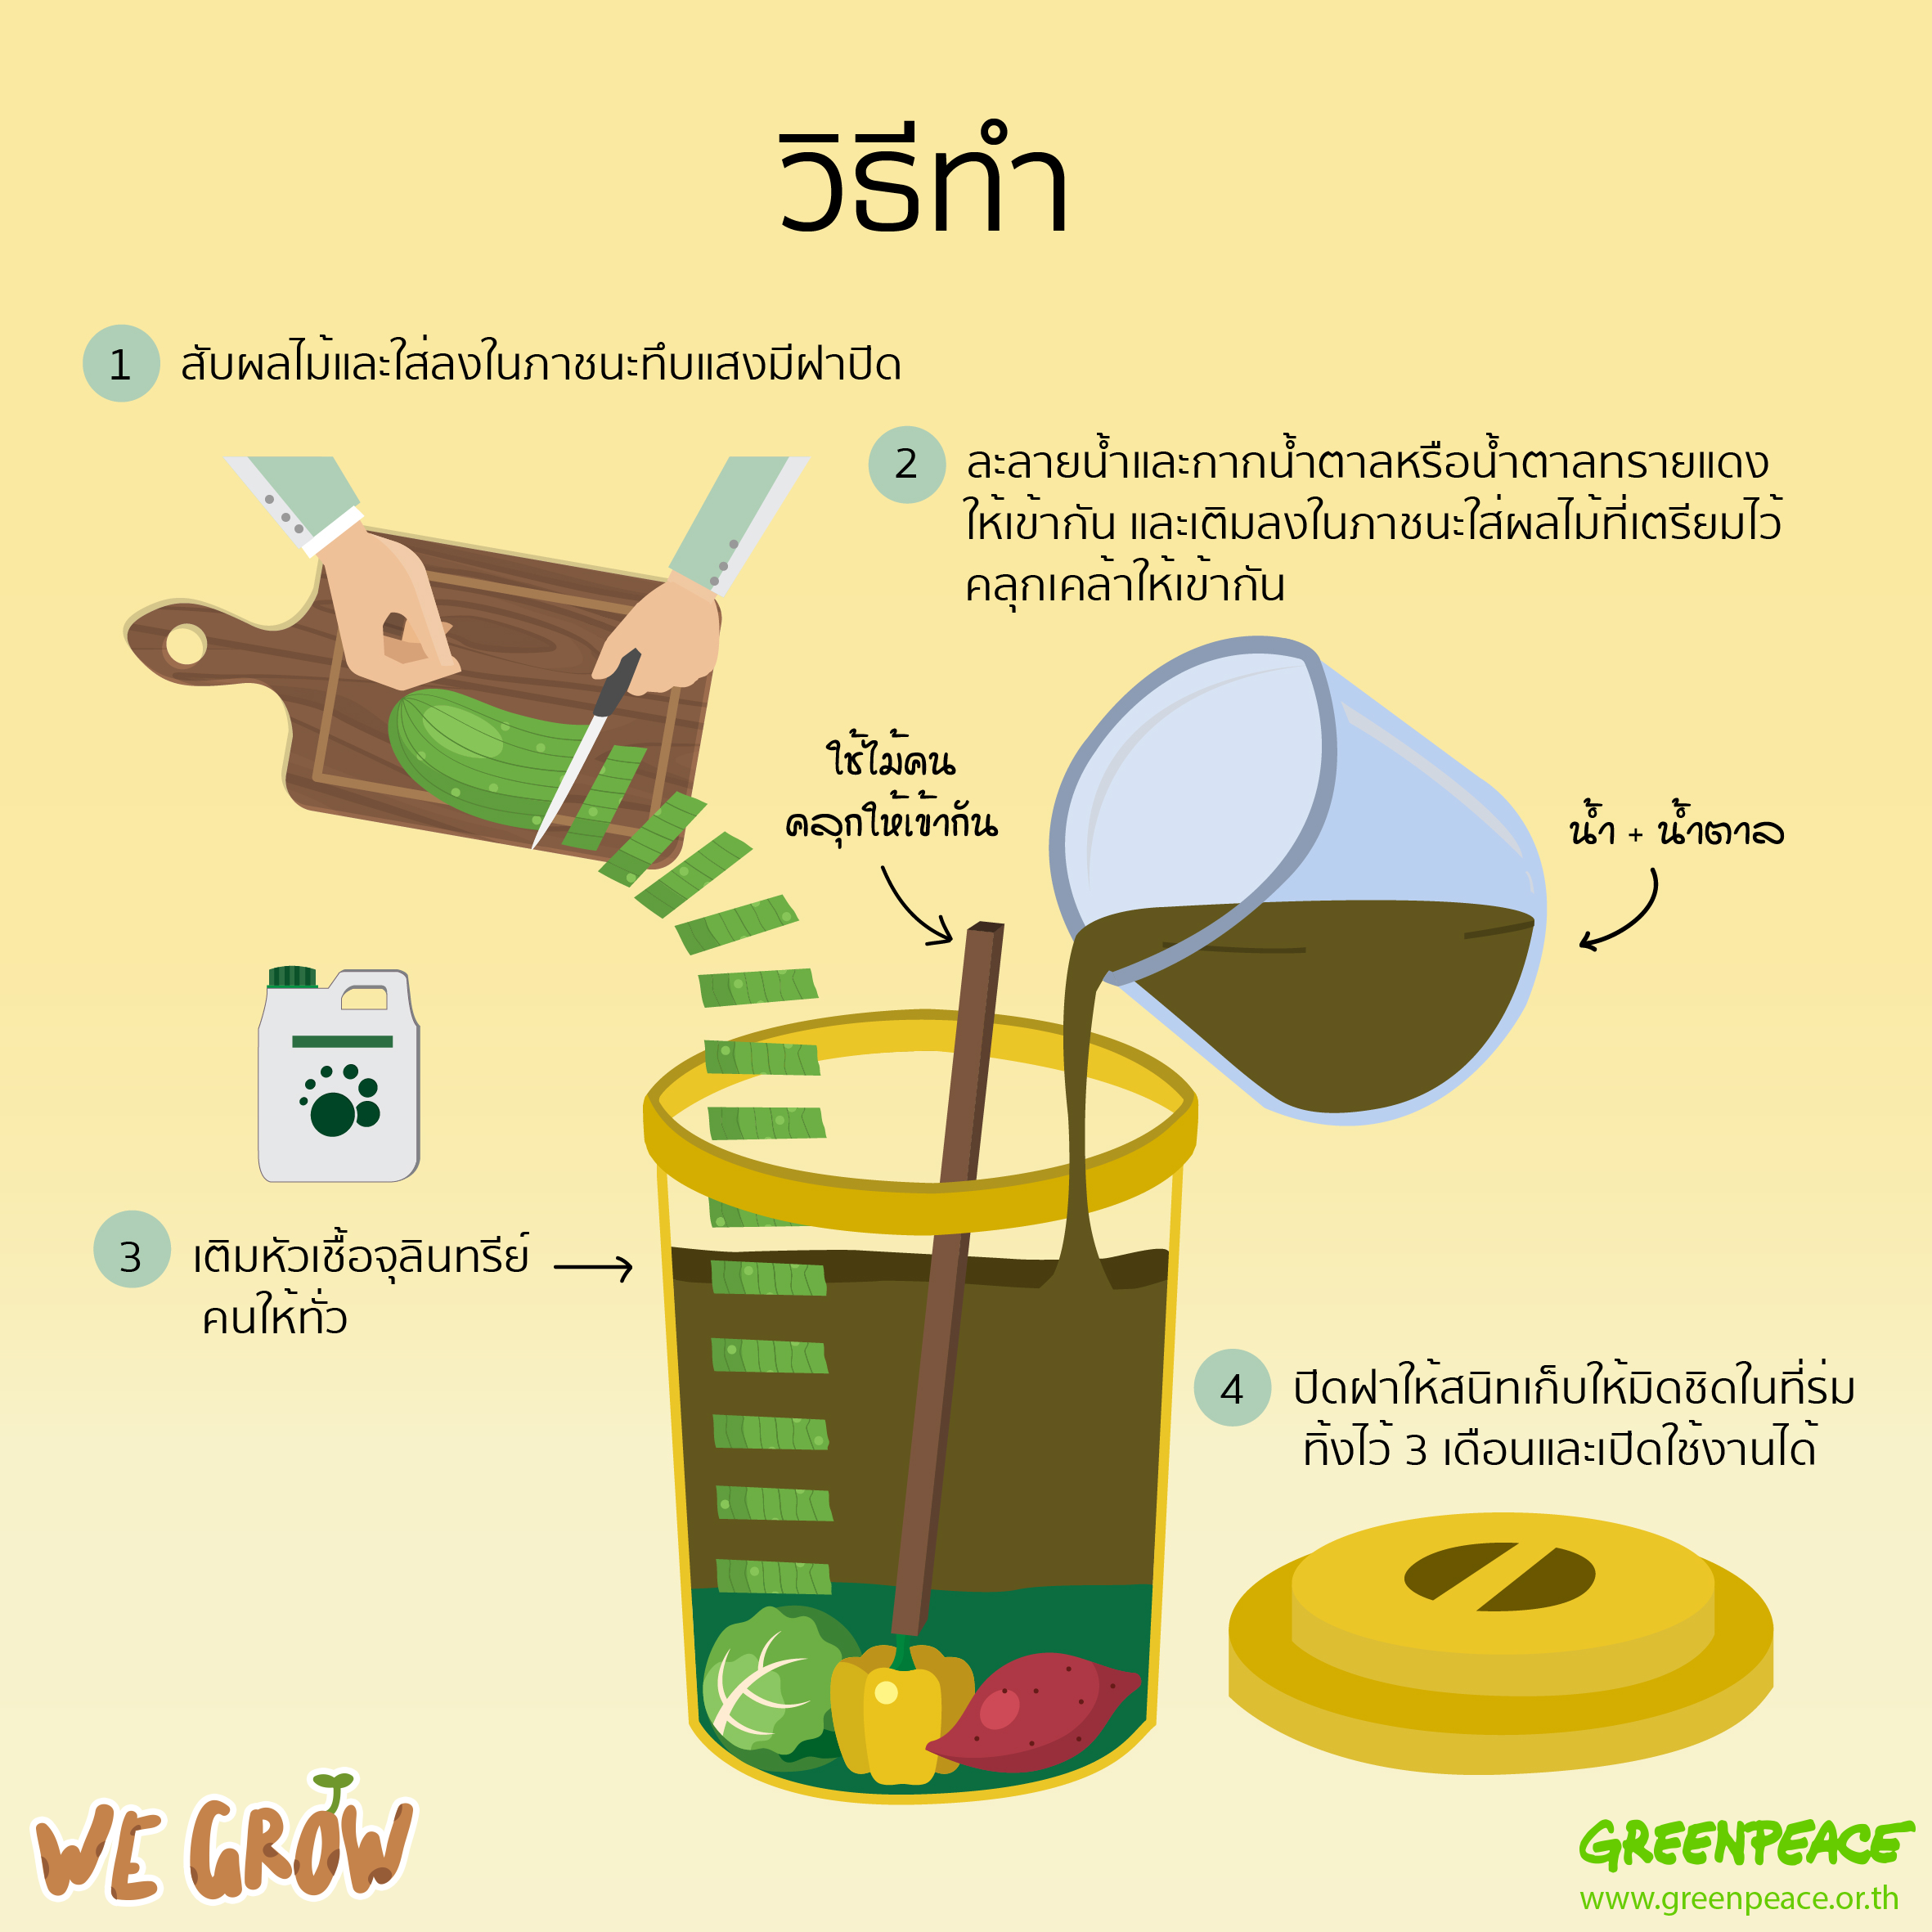 วิธีการทำปุ๋ยอินทรีย์ต่างๆ - Greenpeace Thailand